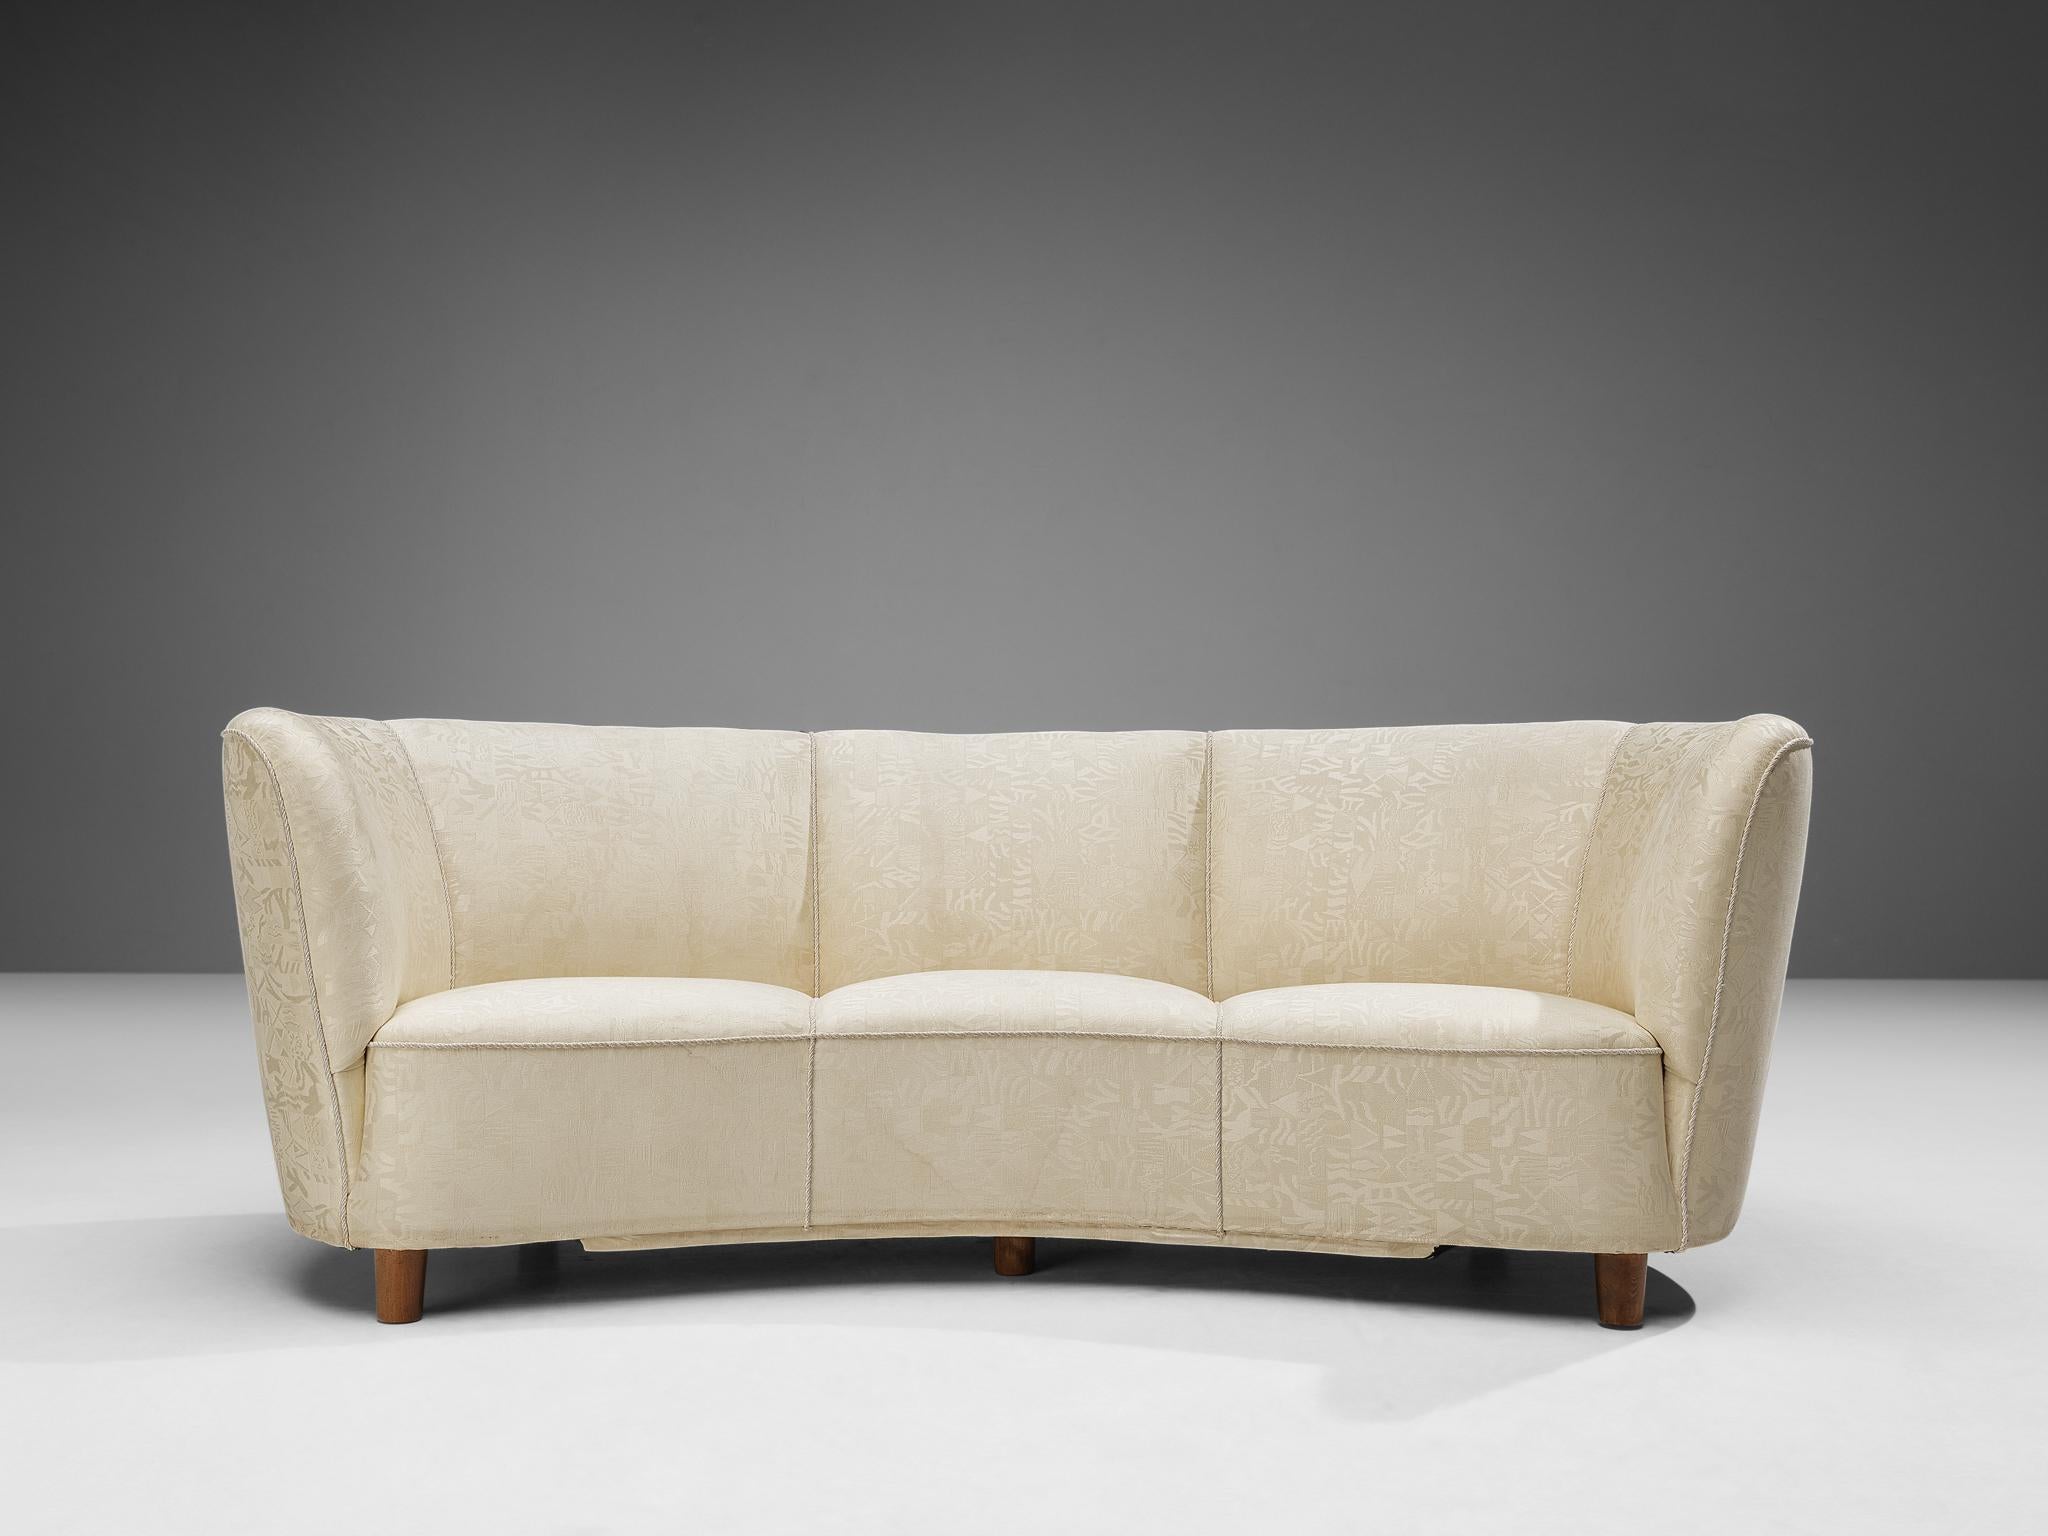 Bananensofa, cremefarbener Bezug, Holzbeine, Dänemark, 1940er Jahre.

Dieses üppige Sofa ist in einem wunderschönen cremefarbenen Stoff mit einem besonderen Muster ausgeführt. Das Sofa hat einen hochgezogenen und geschwungenen Rücken, während die